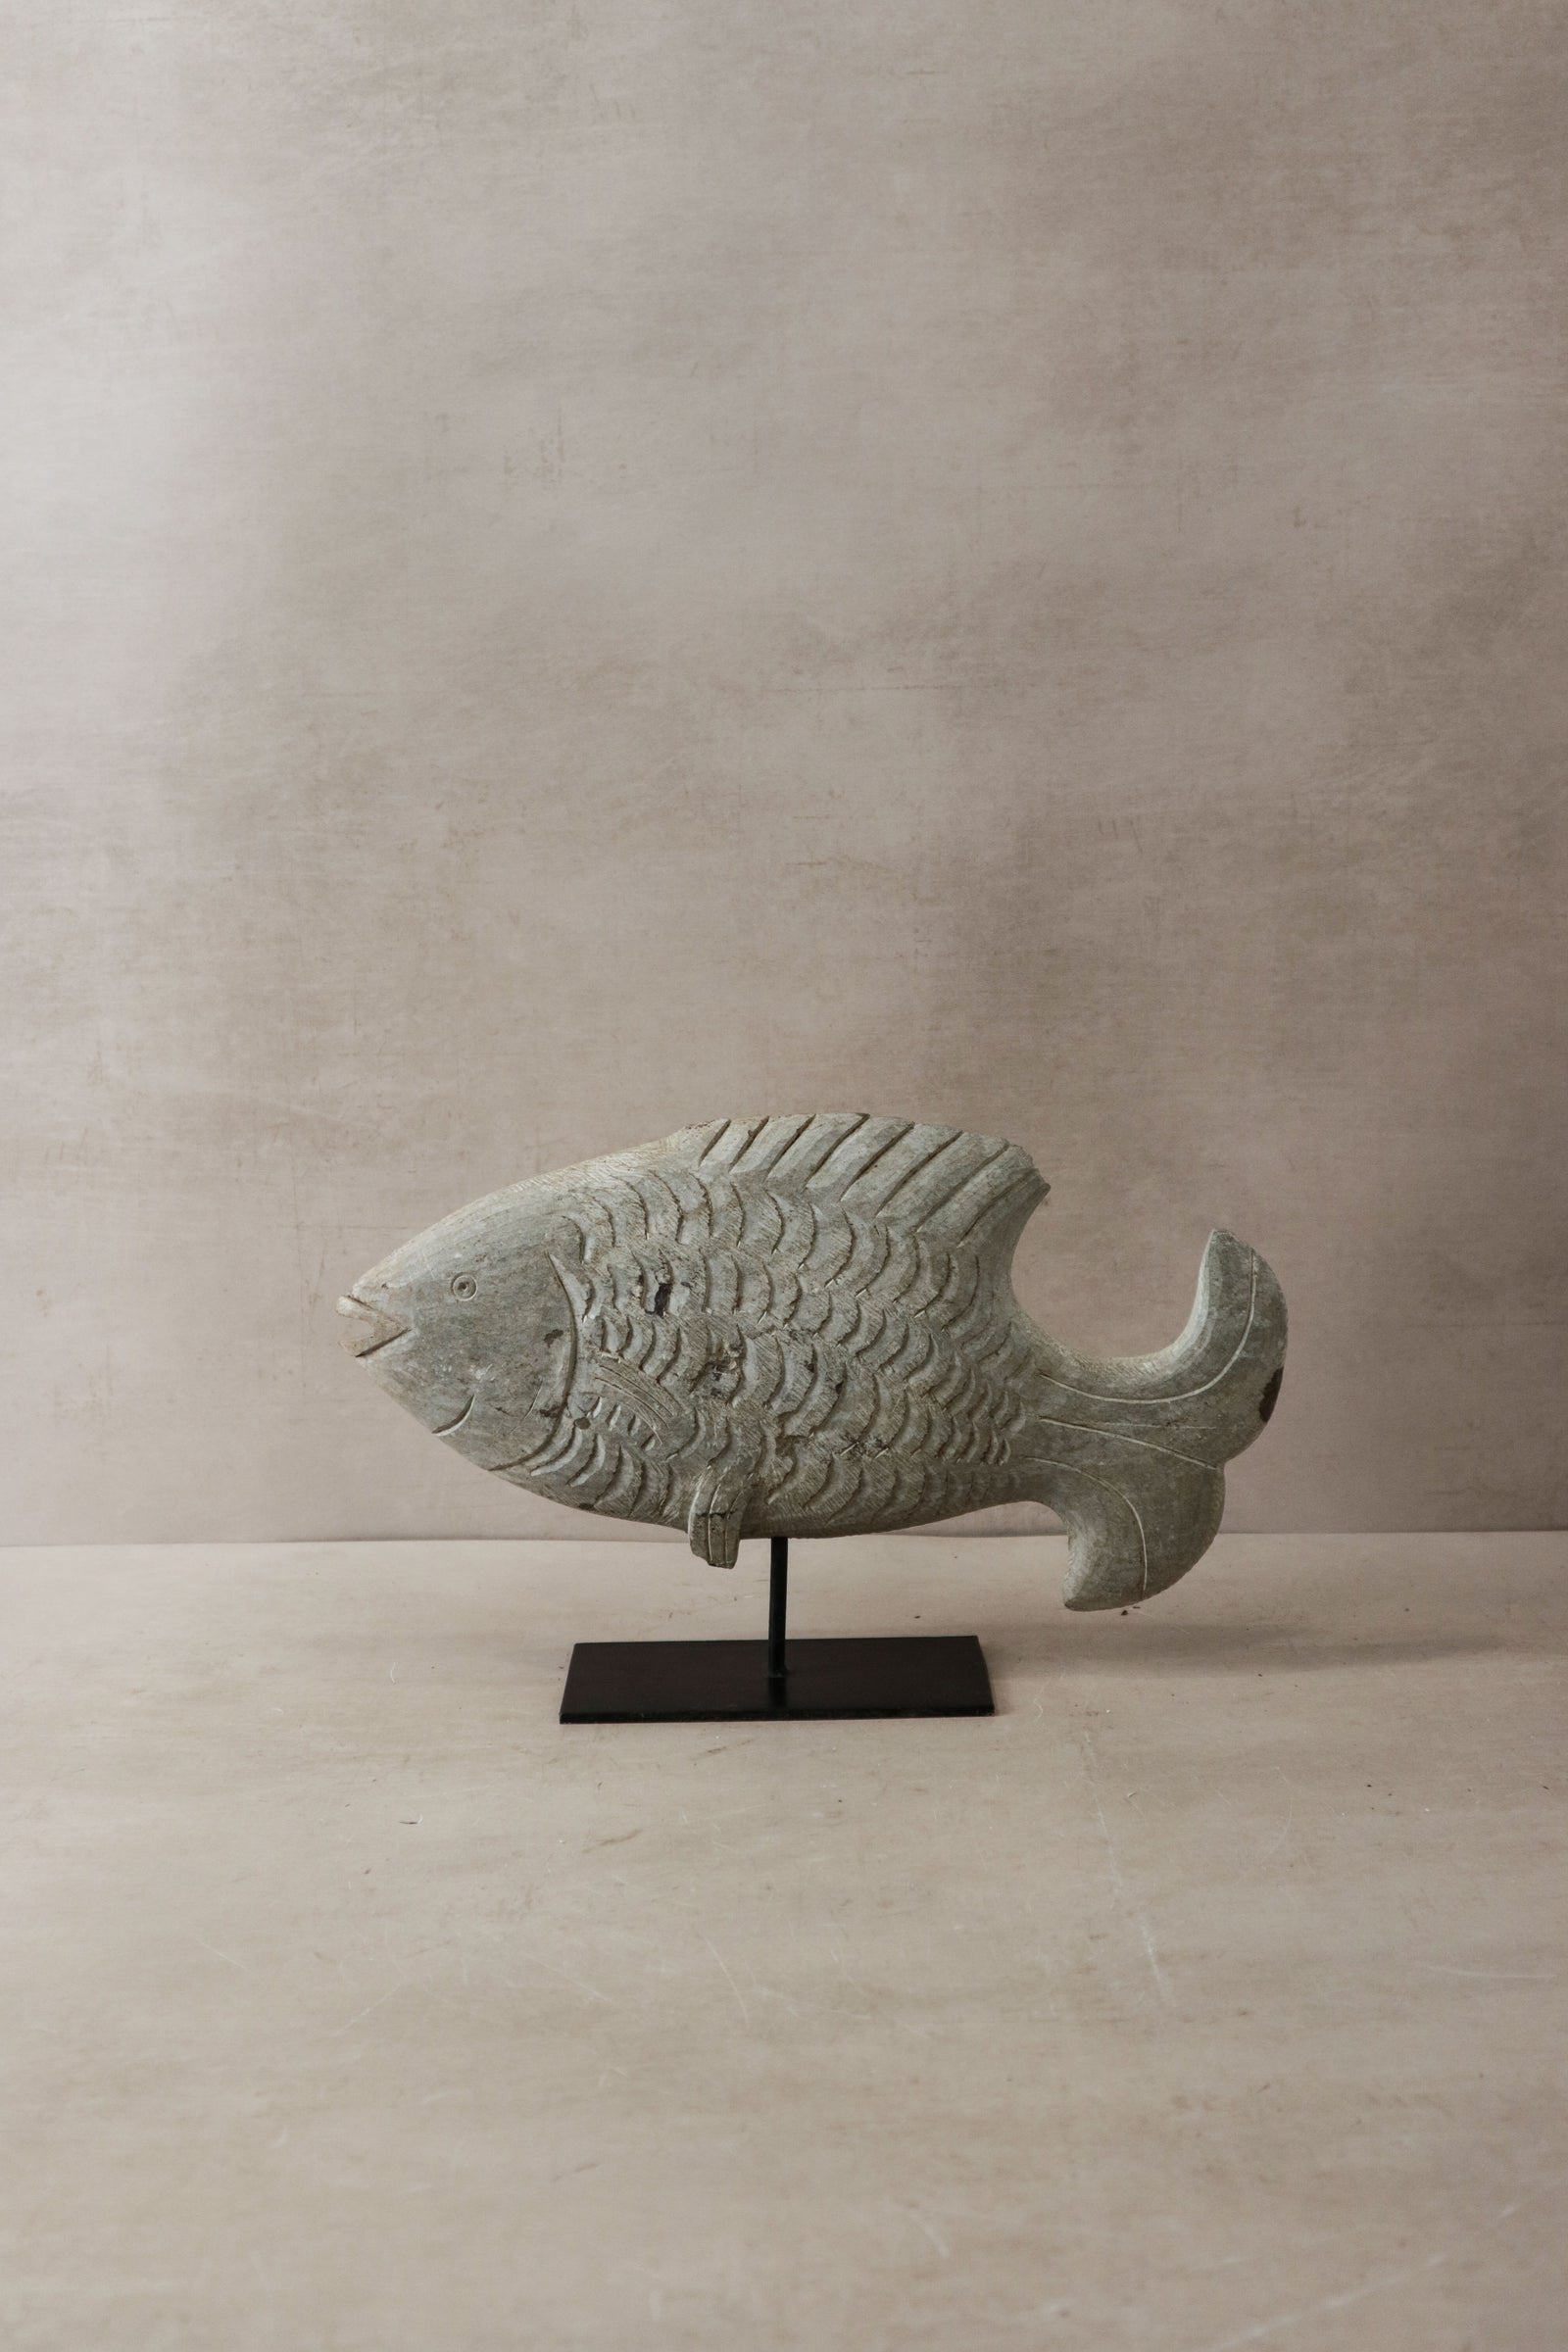 Stone Fish Sculpture - Zimbabwe - 37.1